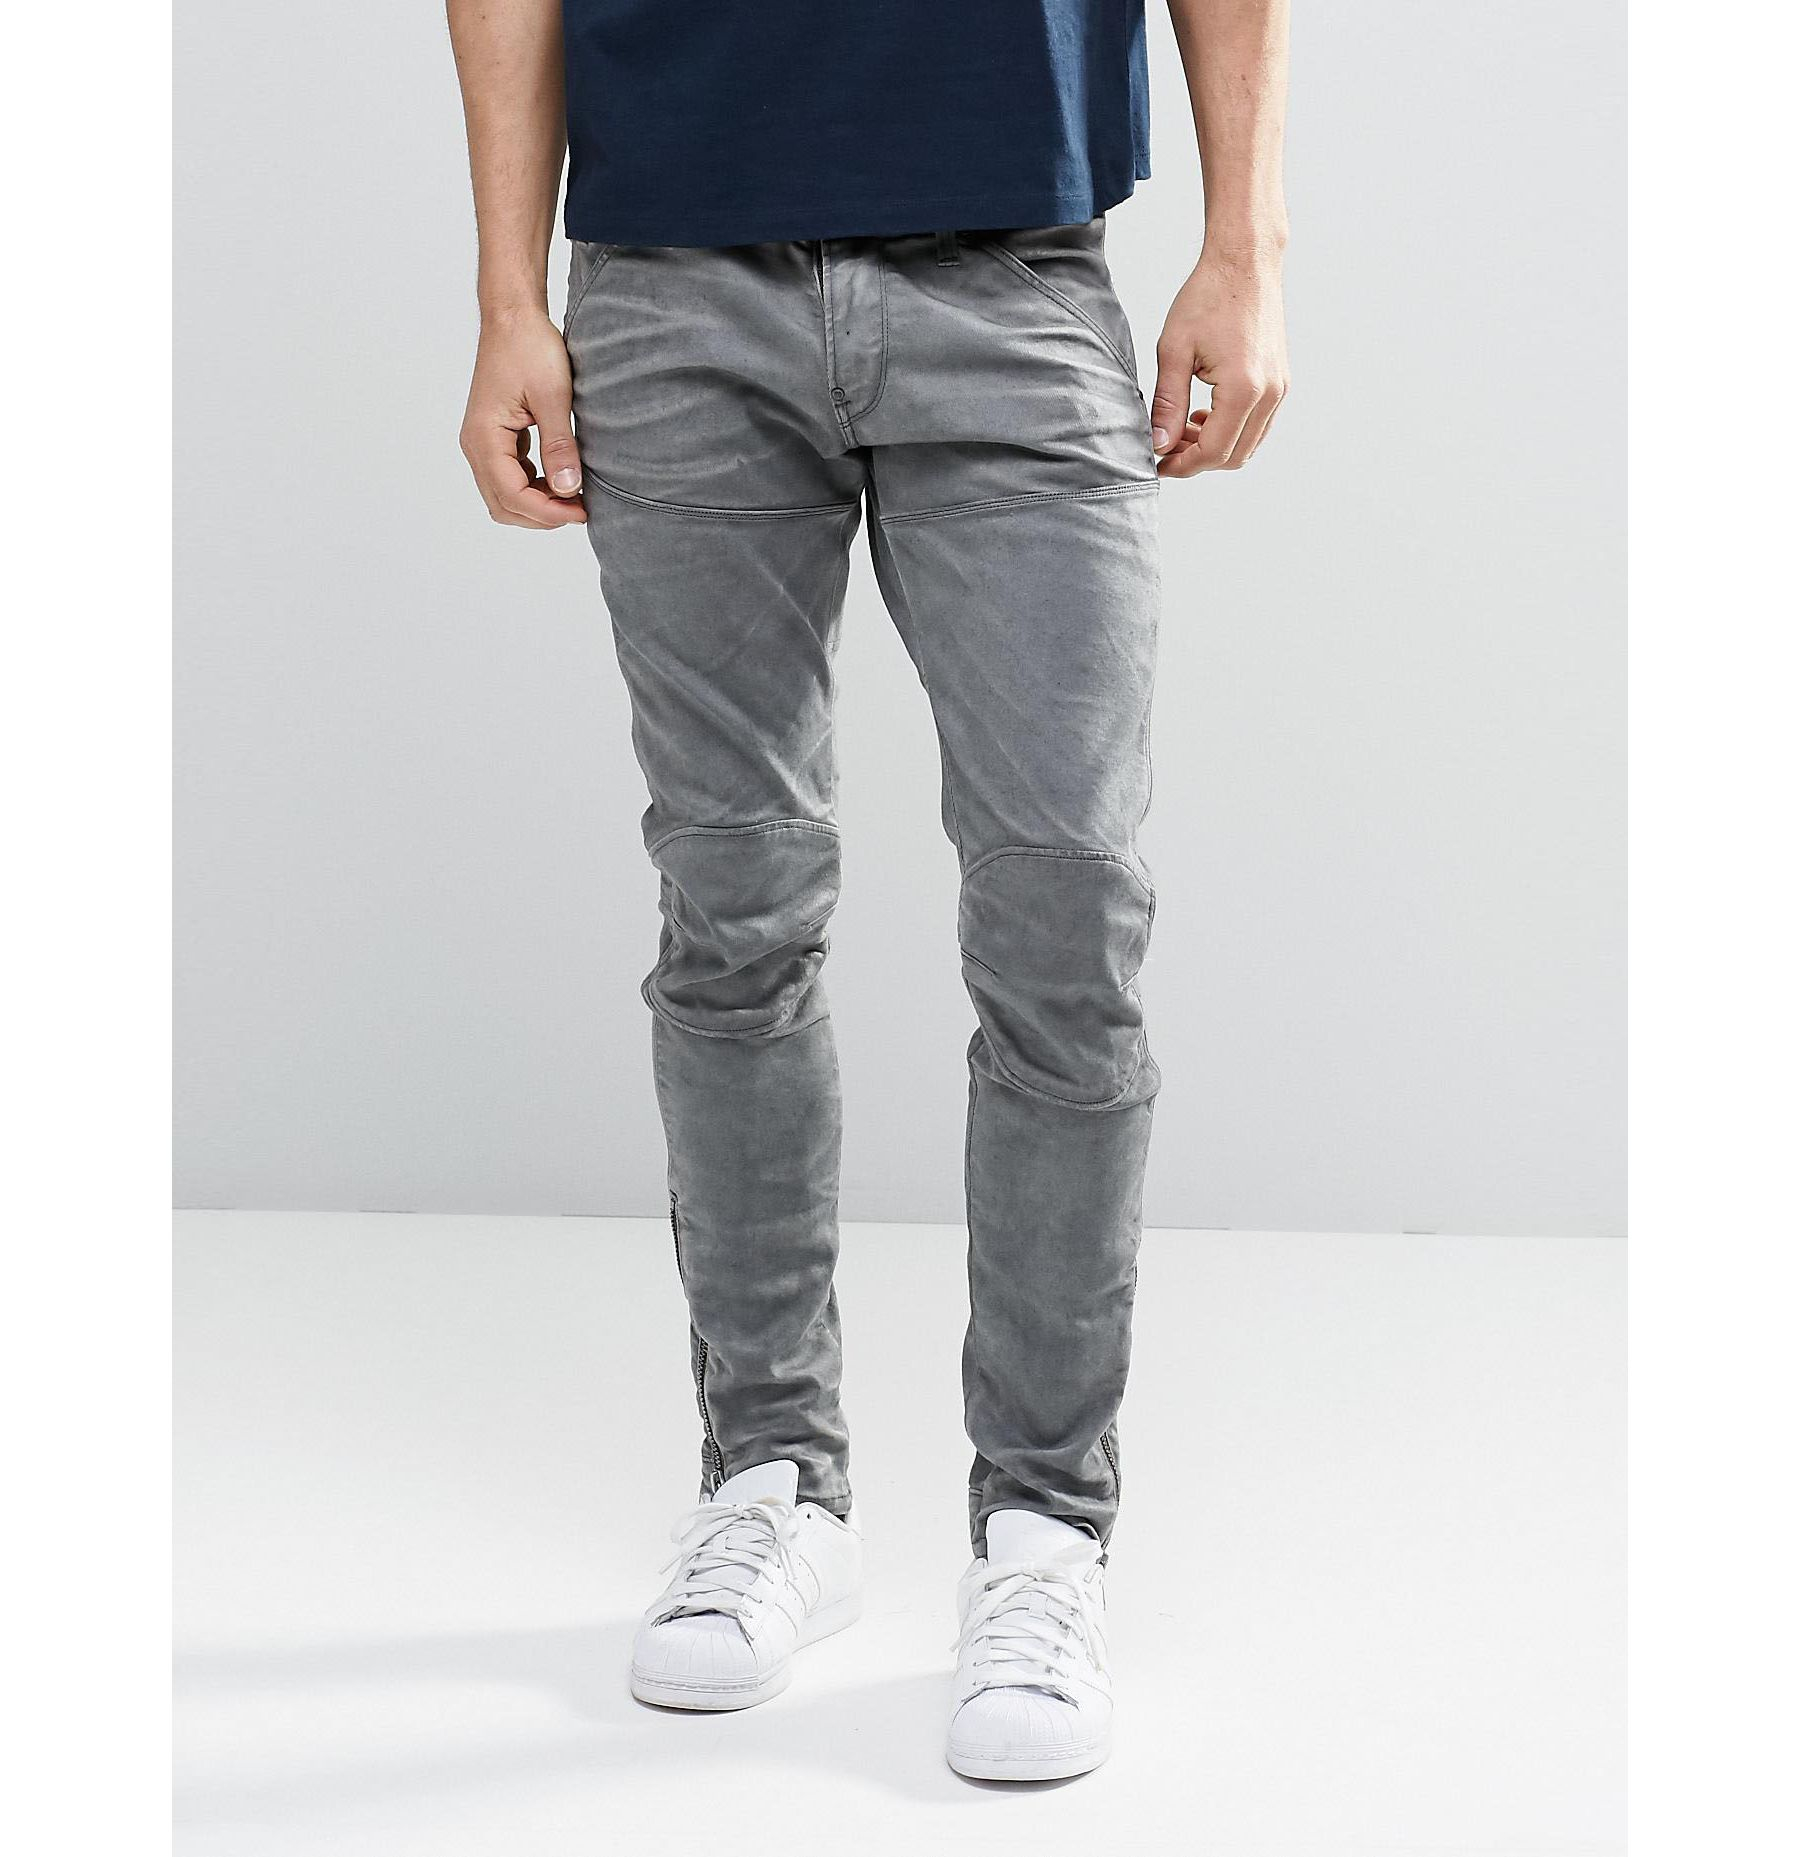 Ontwaken Overtekenen Festival G-Star RAW 5620 3d Ankle Zip Super Slim Jeans for Men | Lyst